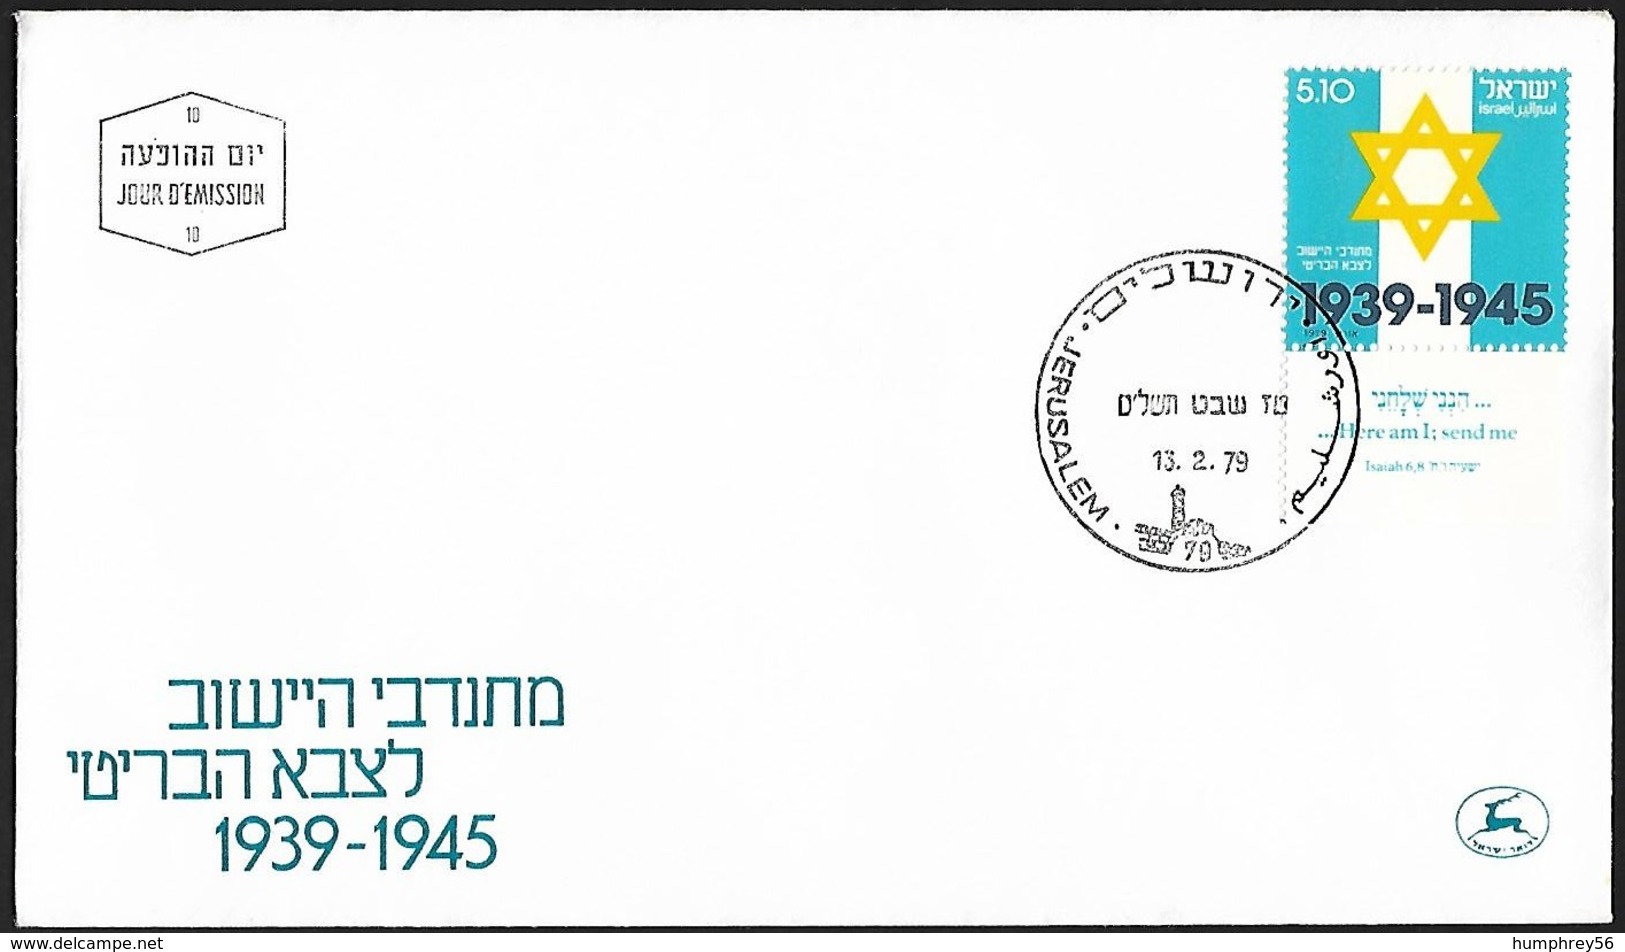 1979 - ISRAEL - FDC + Michel 789 [Jewish Brigade] + JERUSALEM - FDC